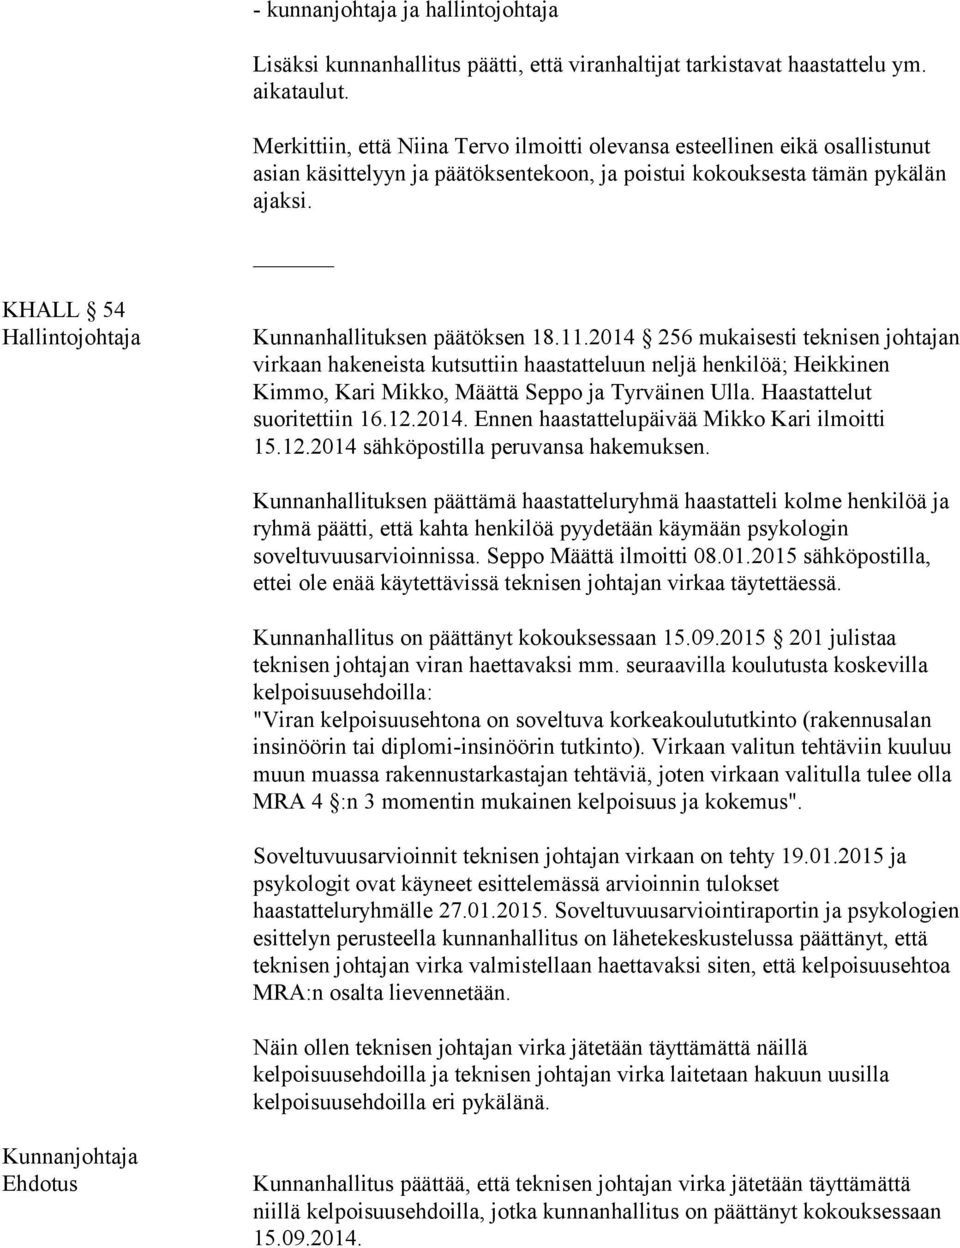 KHALL 54 Hallintojohtaja Kunnanhallituksen päätöksen 18.11.